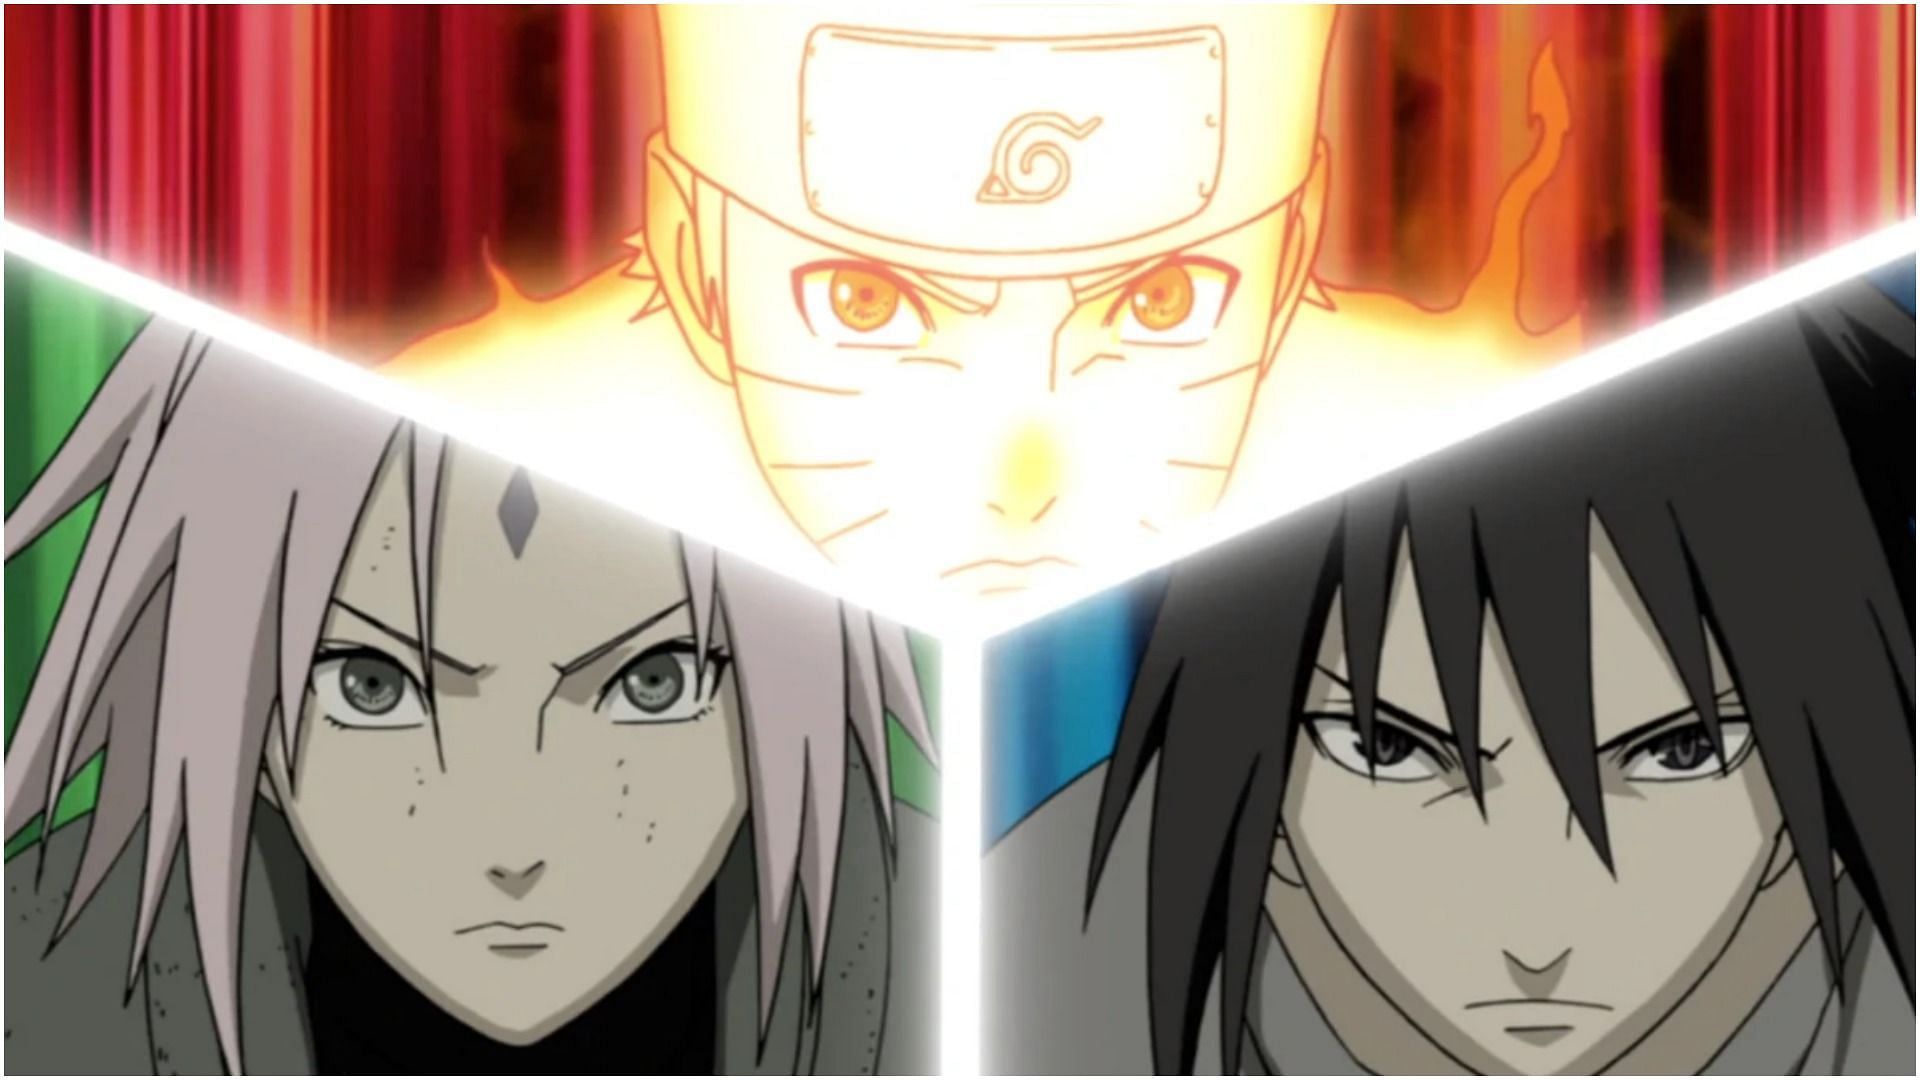 Sakura, Naruto, and Sasuke (Image via Studio Pierrot)